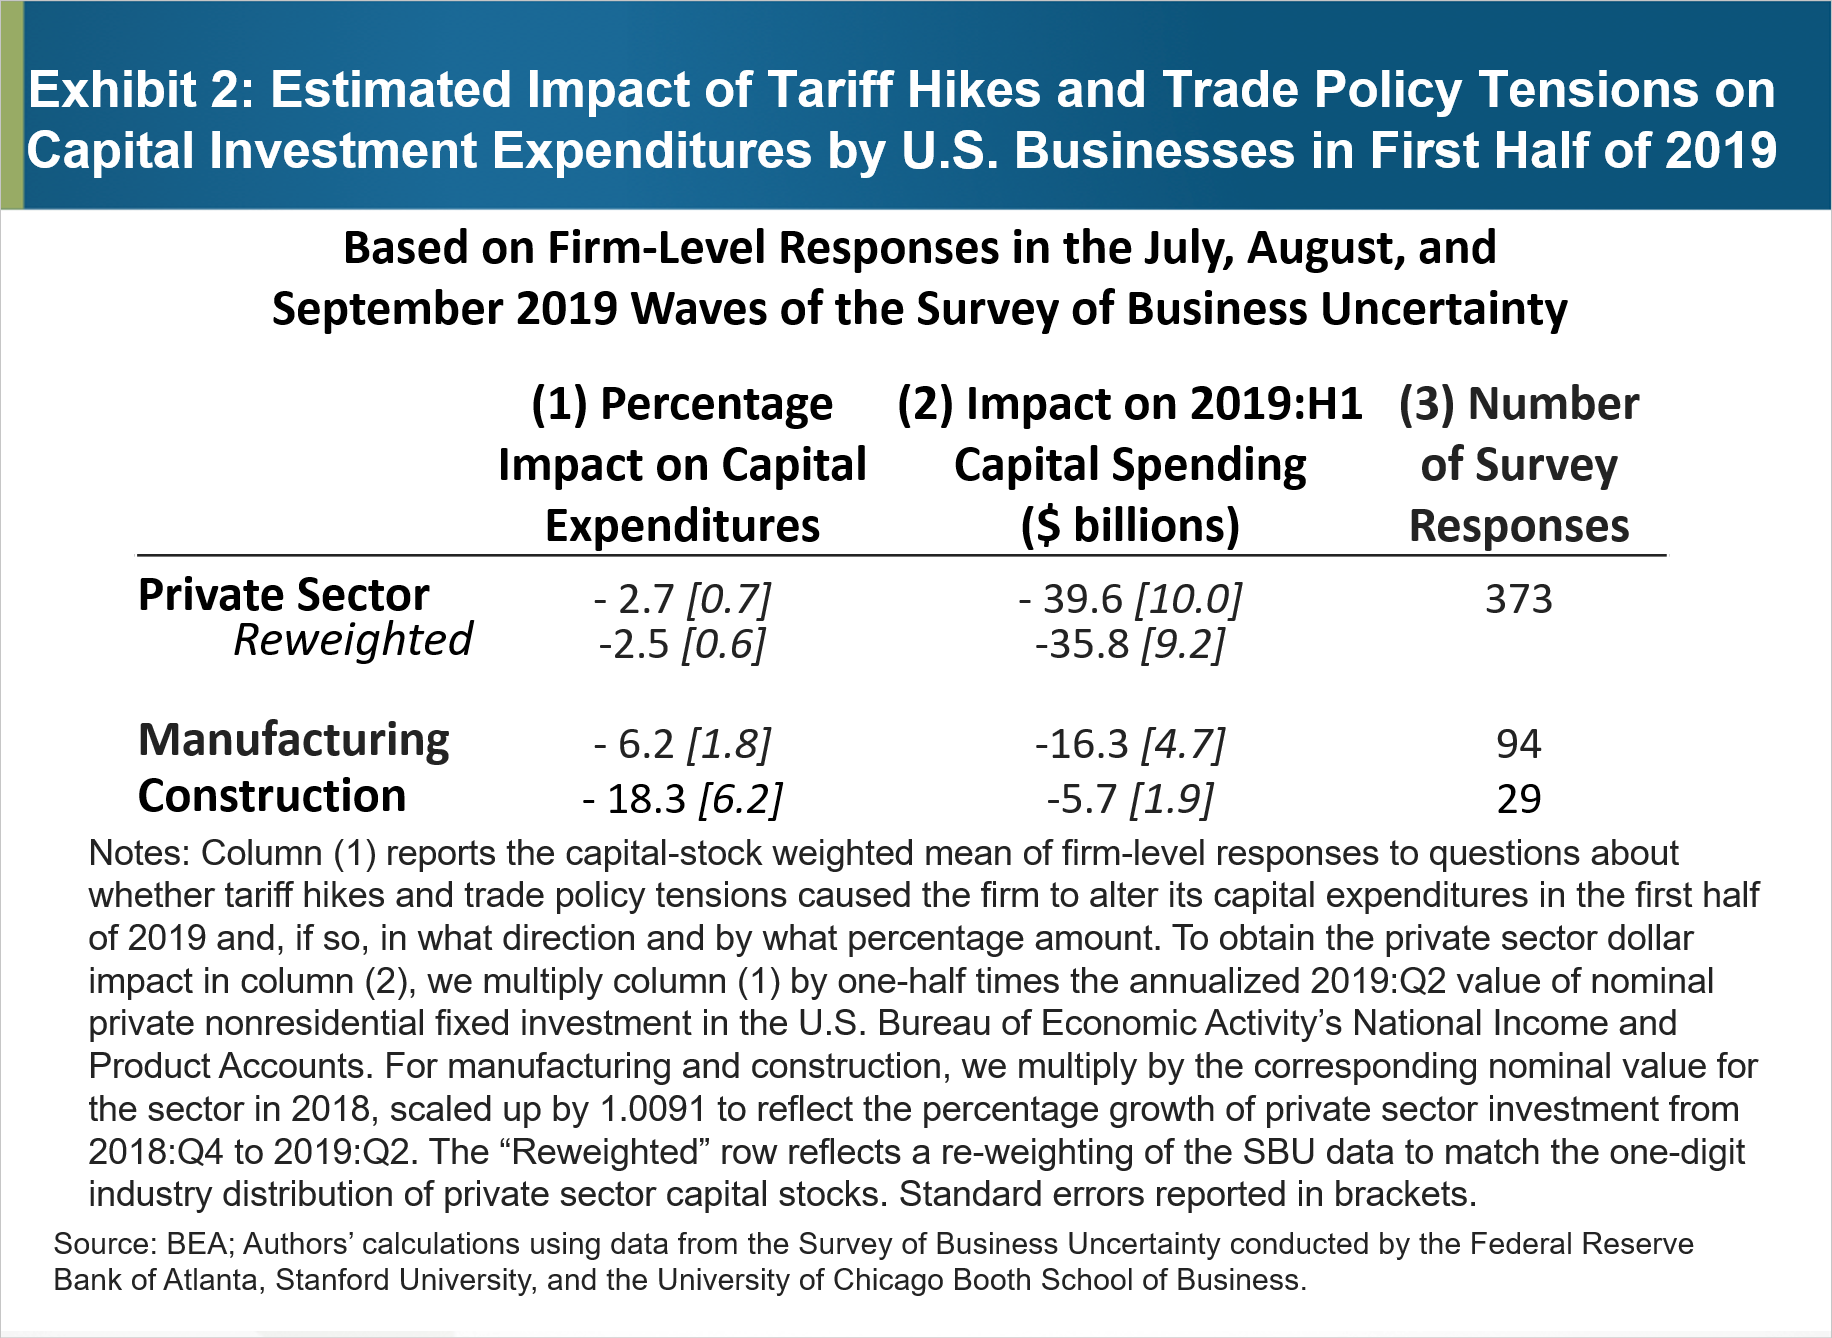 Rysunek 2: Szacunkowy wpływ podwyżek taryf i napięć w polityce handlowej na wydatki na inwestycje kapitałowe firm amerykańskich w pierwszej połowie 2019 r.